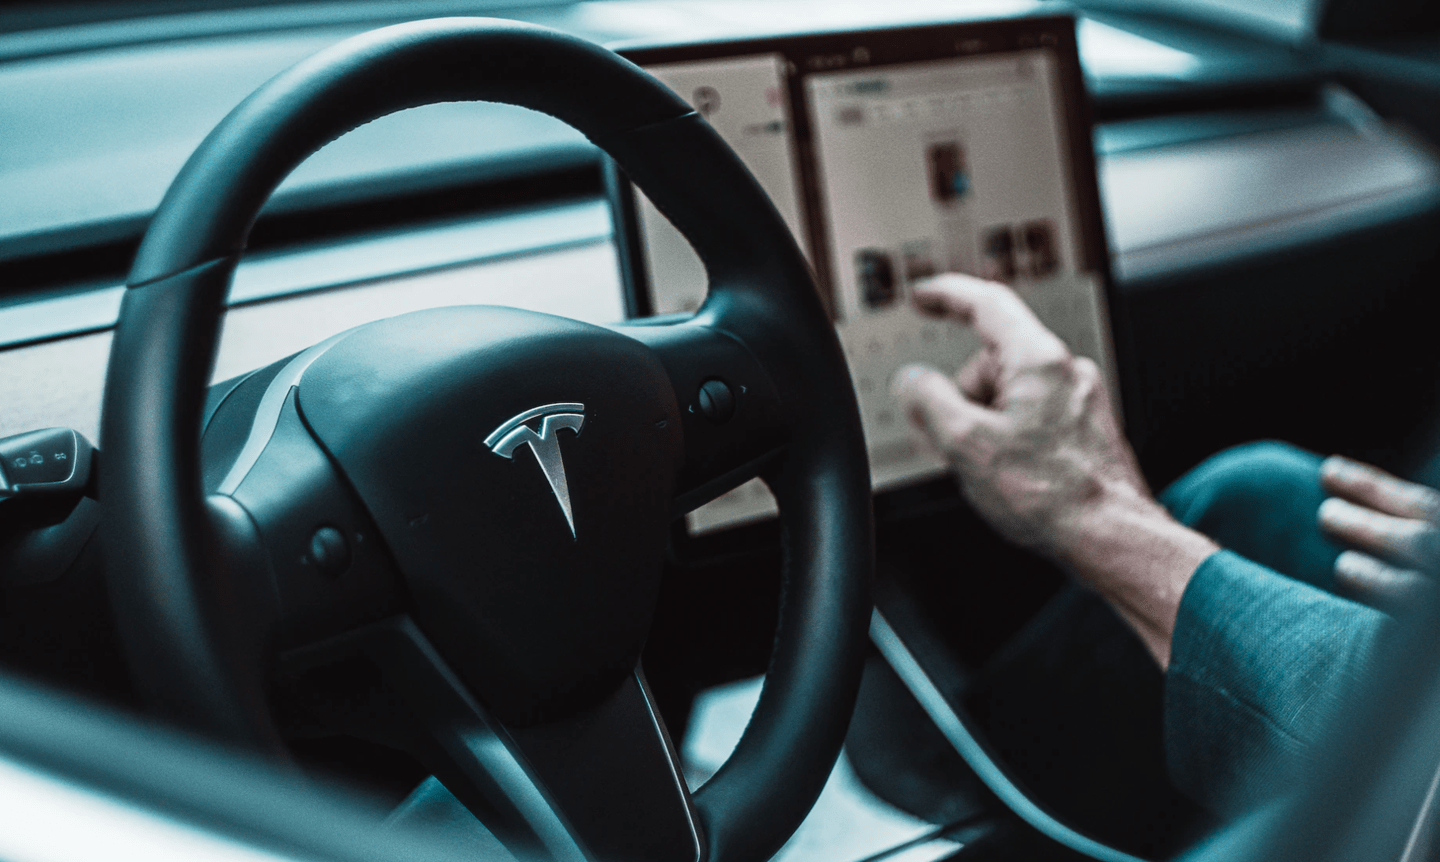 特斯拉全新跑车Roadster发布：1.9秒破百 续航1000公里-特斯拉,Roadster,跑车, ——快科技(驱动之家旗下媒体)--科技改变未来